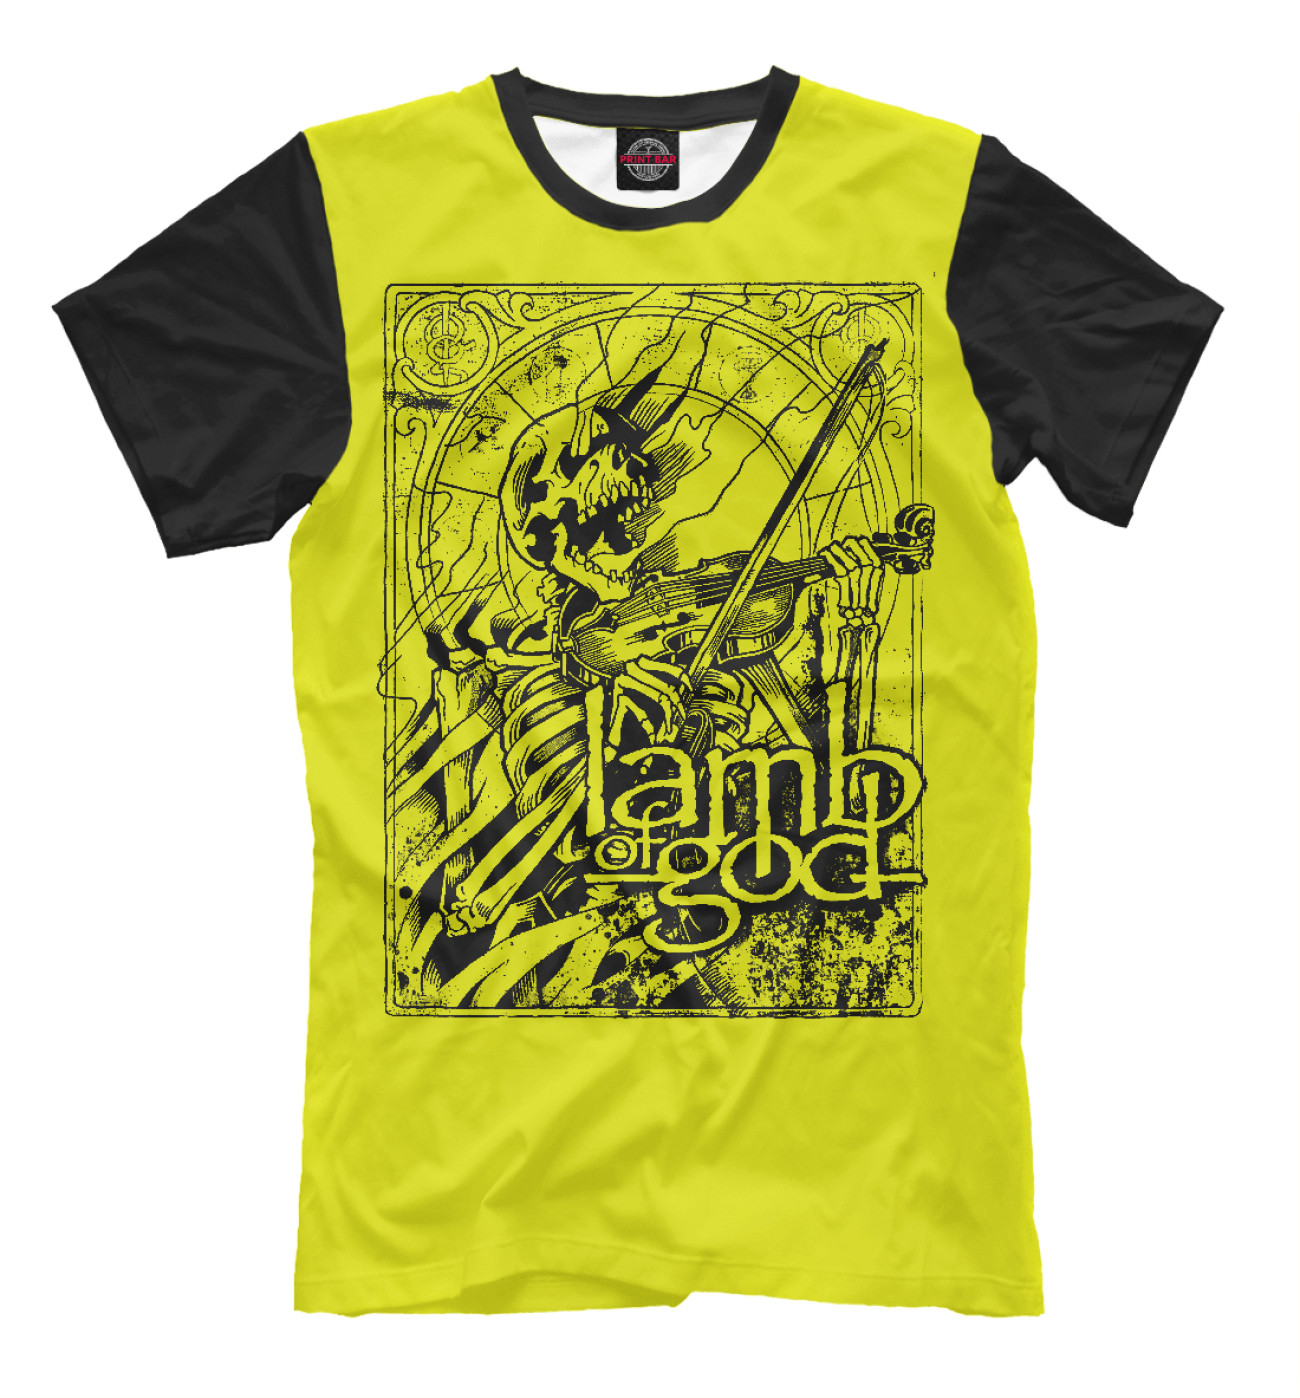 Мужская Футболка Lamb of God (yellow), артикул: LOG-633220-fut-2